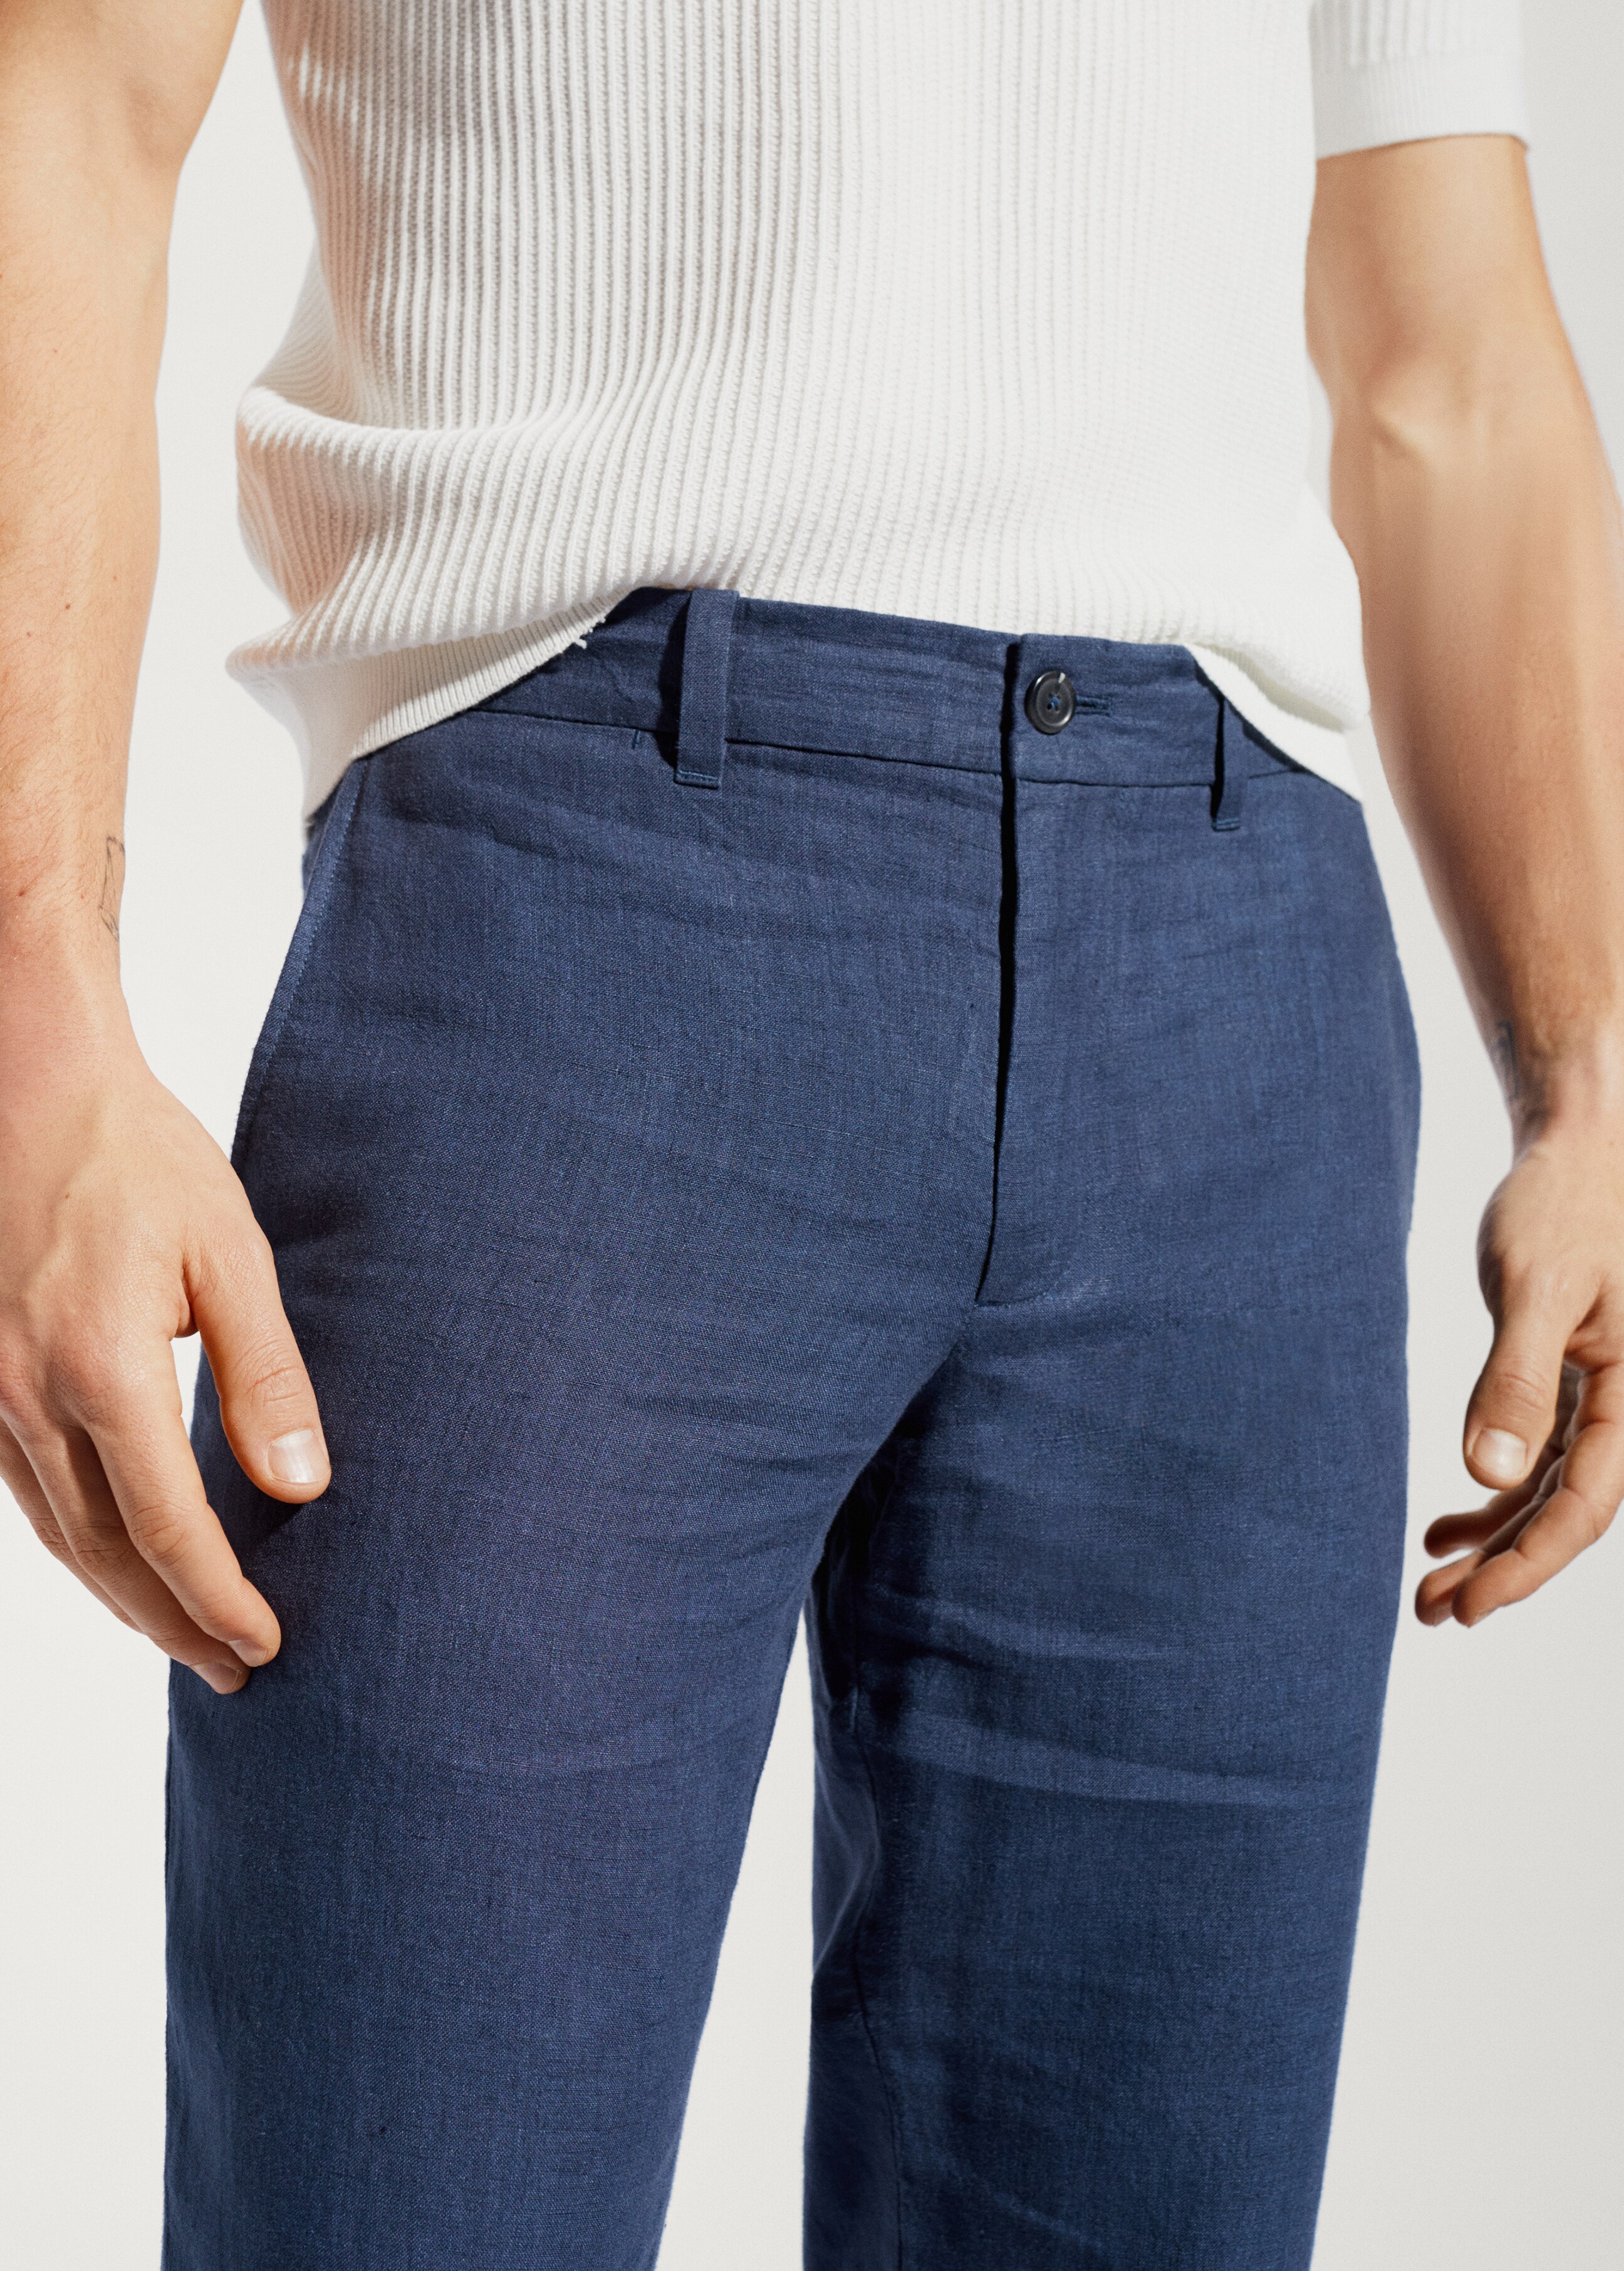 Pantaloni 100% lino slim fit - Dettaglio dell'articolo 1